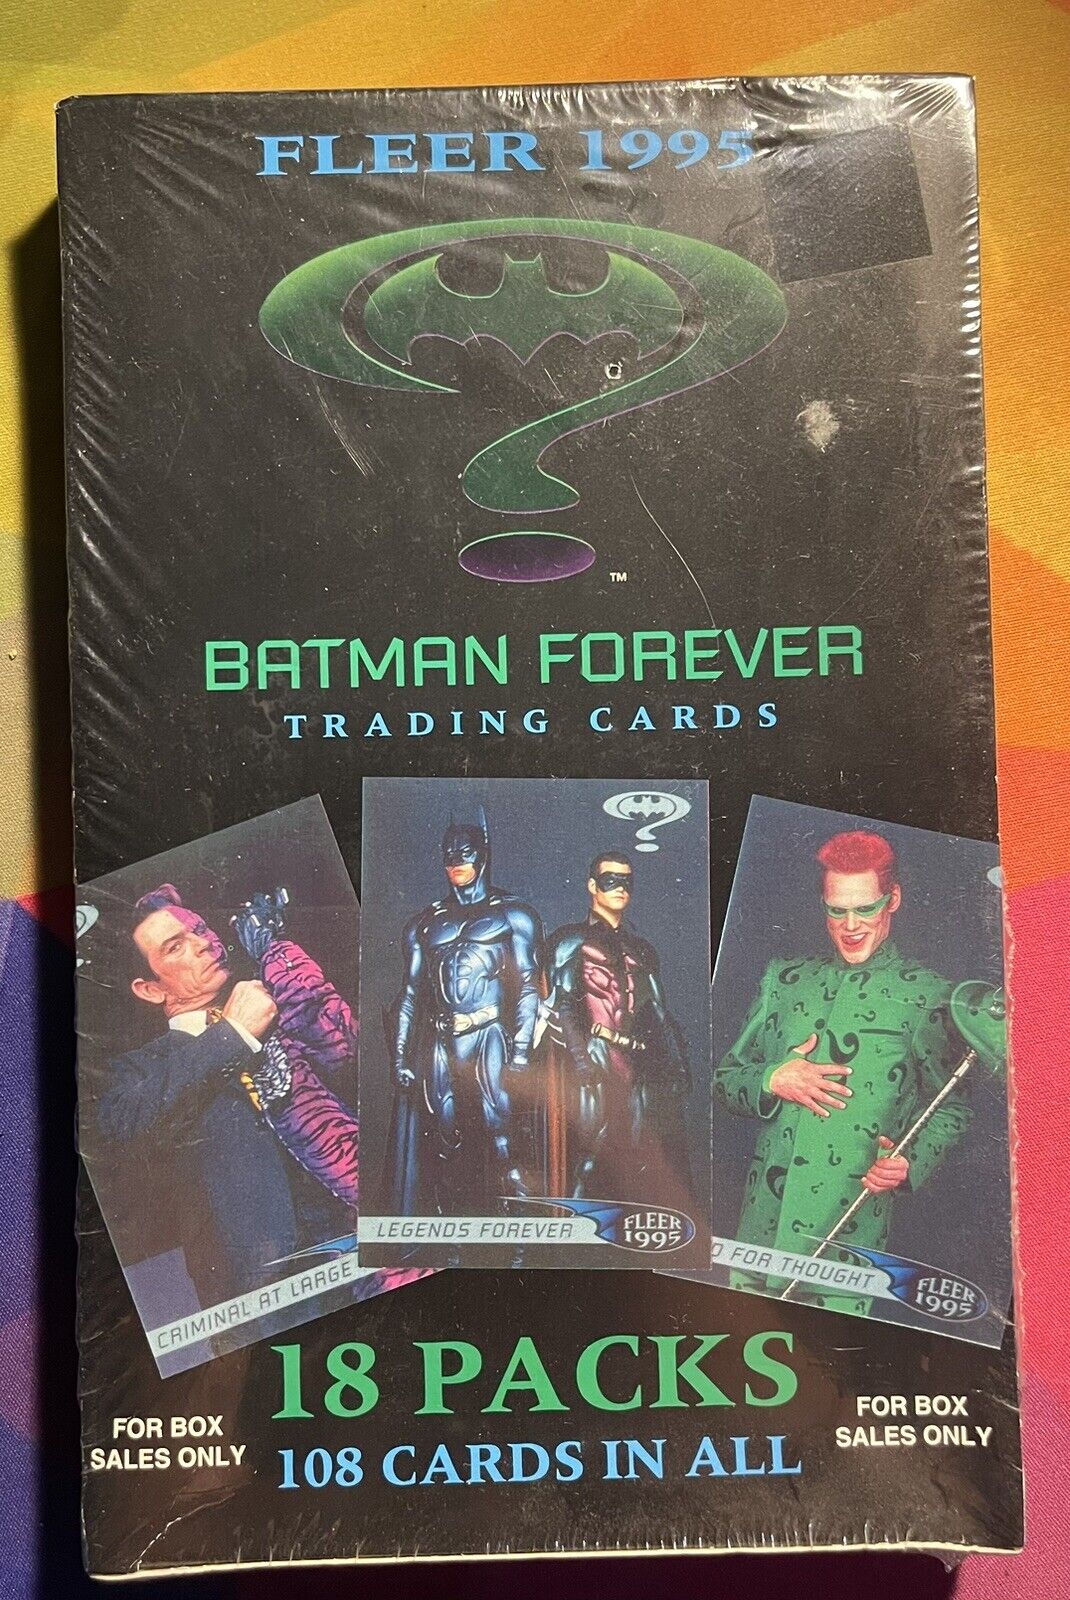 FLEER 1995 BATMAN FOREVER TRADING CARDS BOX *18 PACKS* FACTORY SEALED